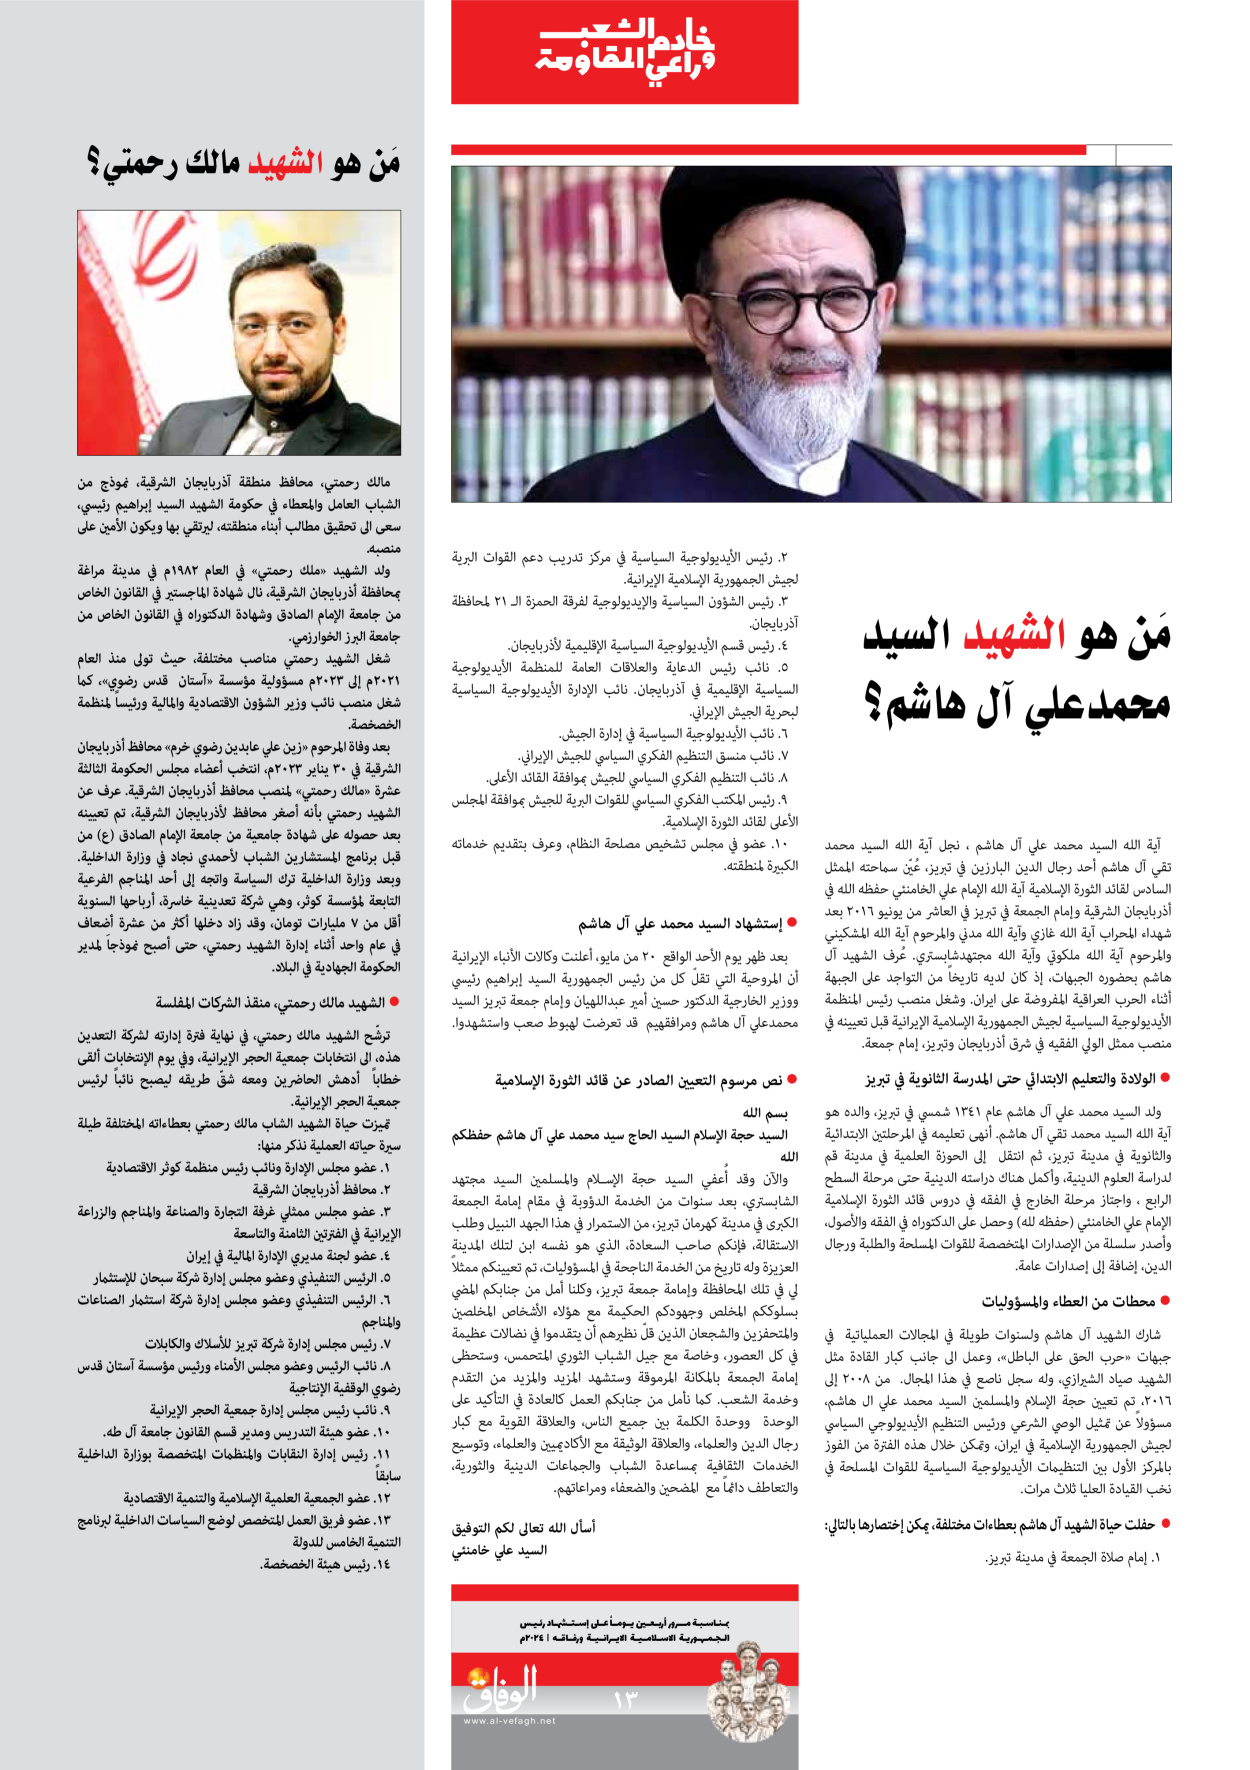 صحیفة ایران الدولیة الوفاق - ملحق ویژه نامه چهلم شهید رییسی - ٢٩ يونيو ٢٠٢٤ - الصفحة ۱۳